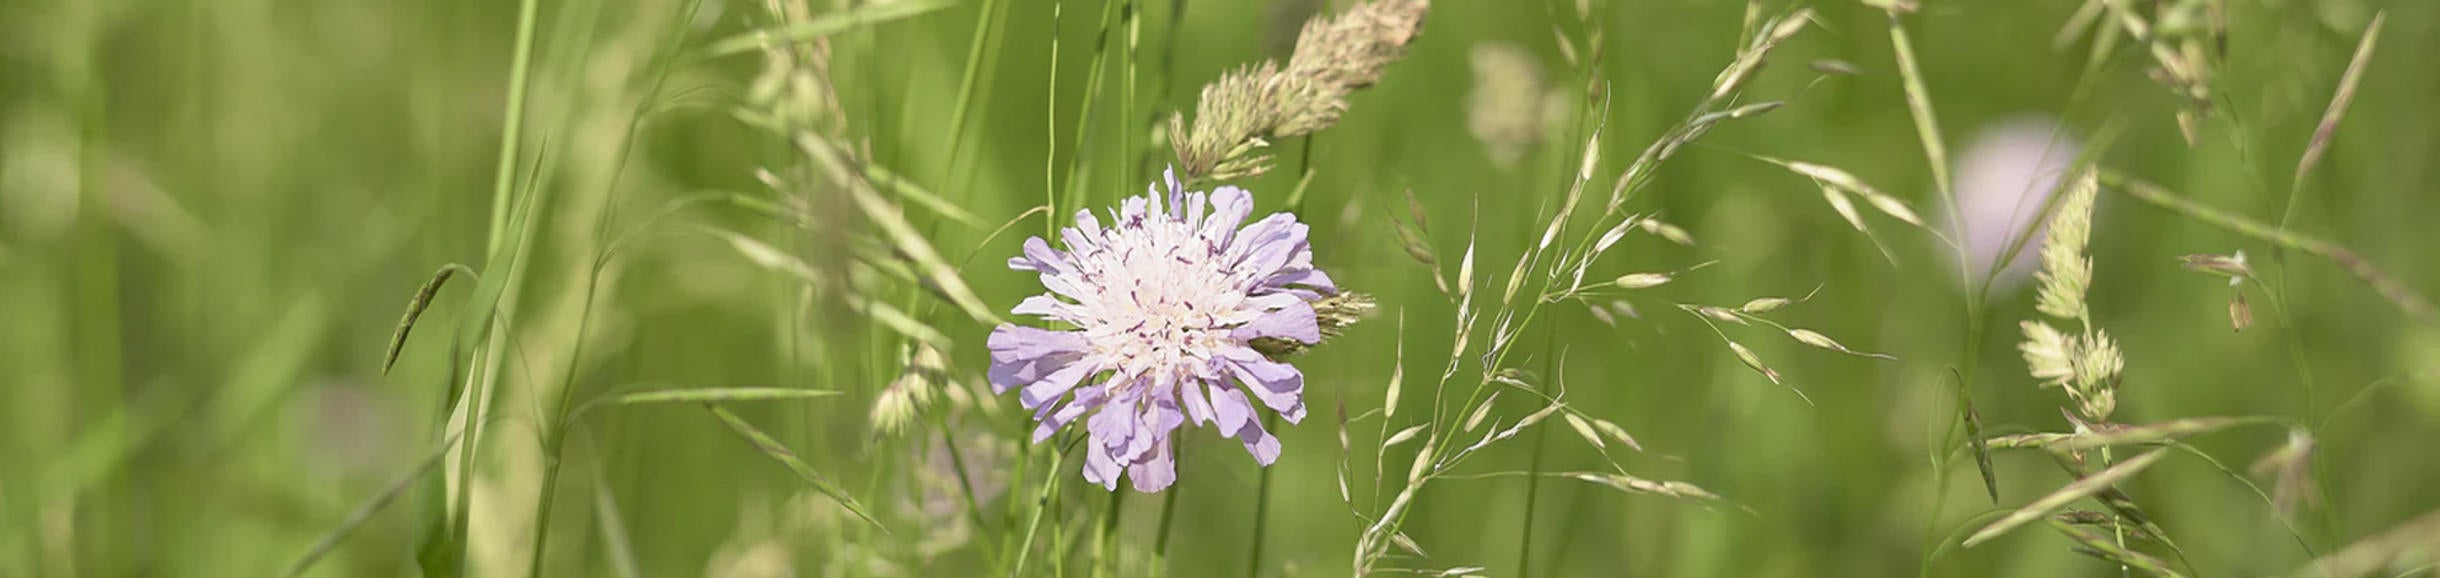 Unsplash Grass with Purple Flower